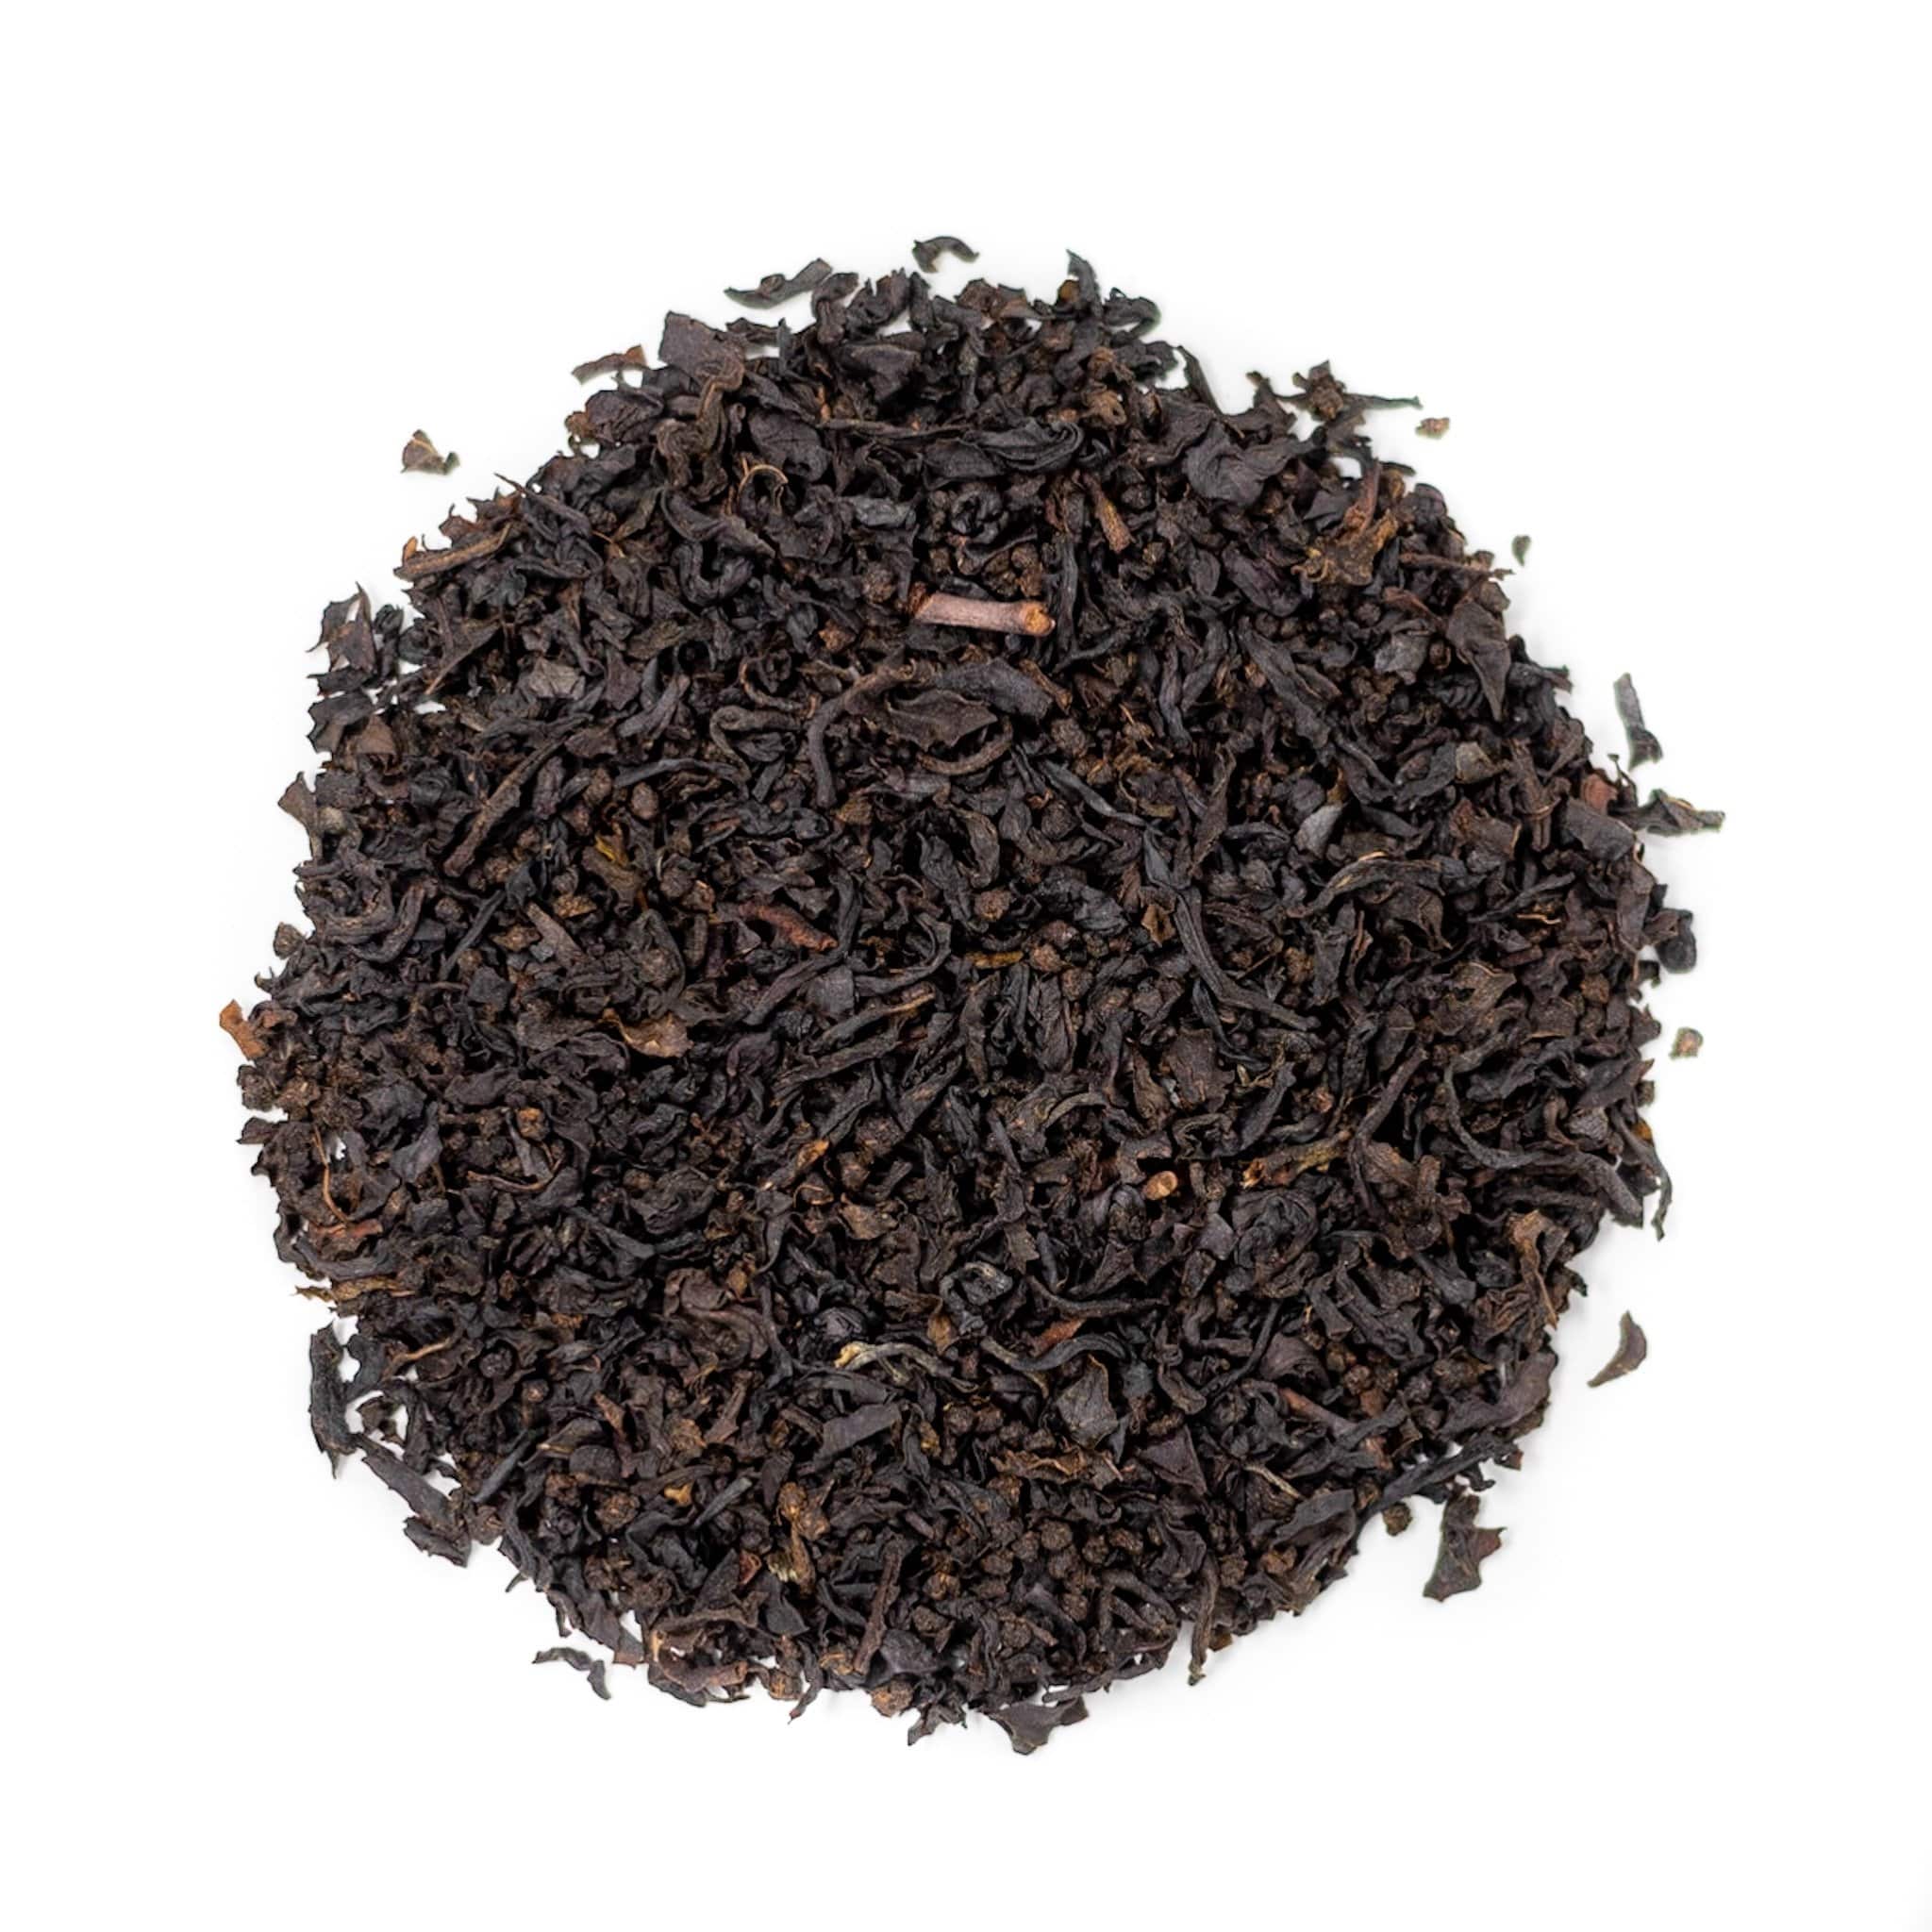 Chado Tea Loose Leaf Vanilla Black Tea